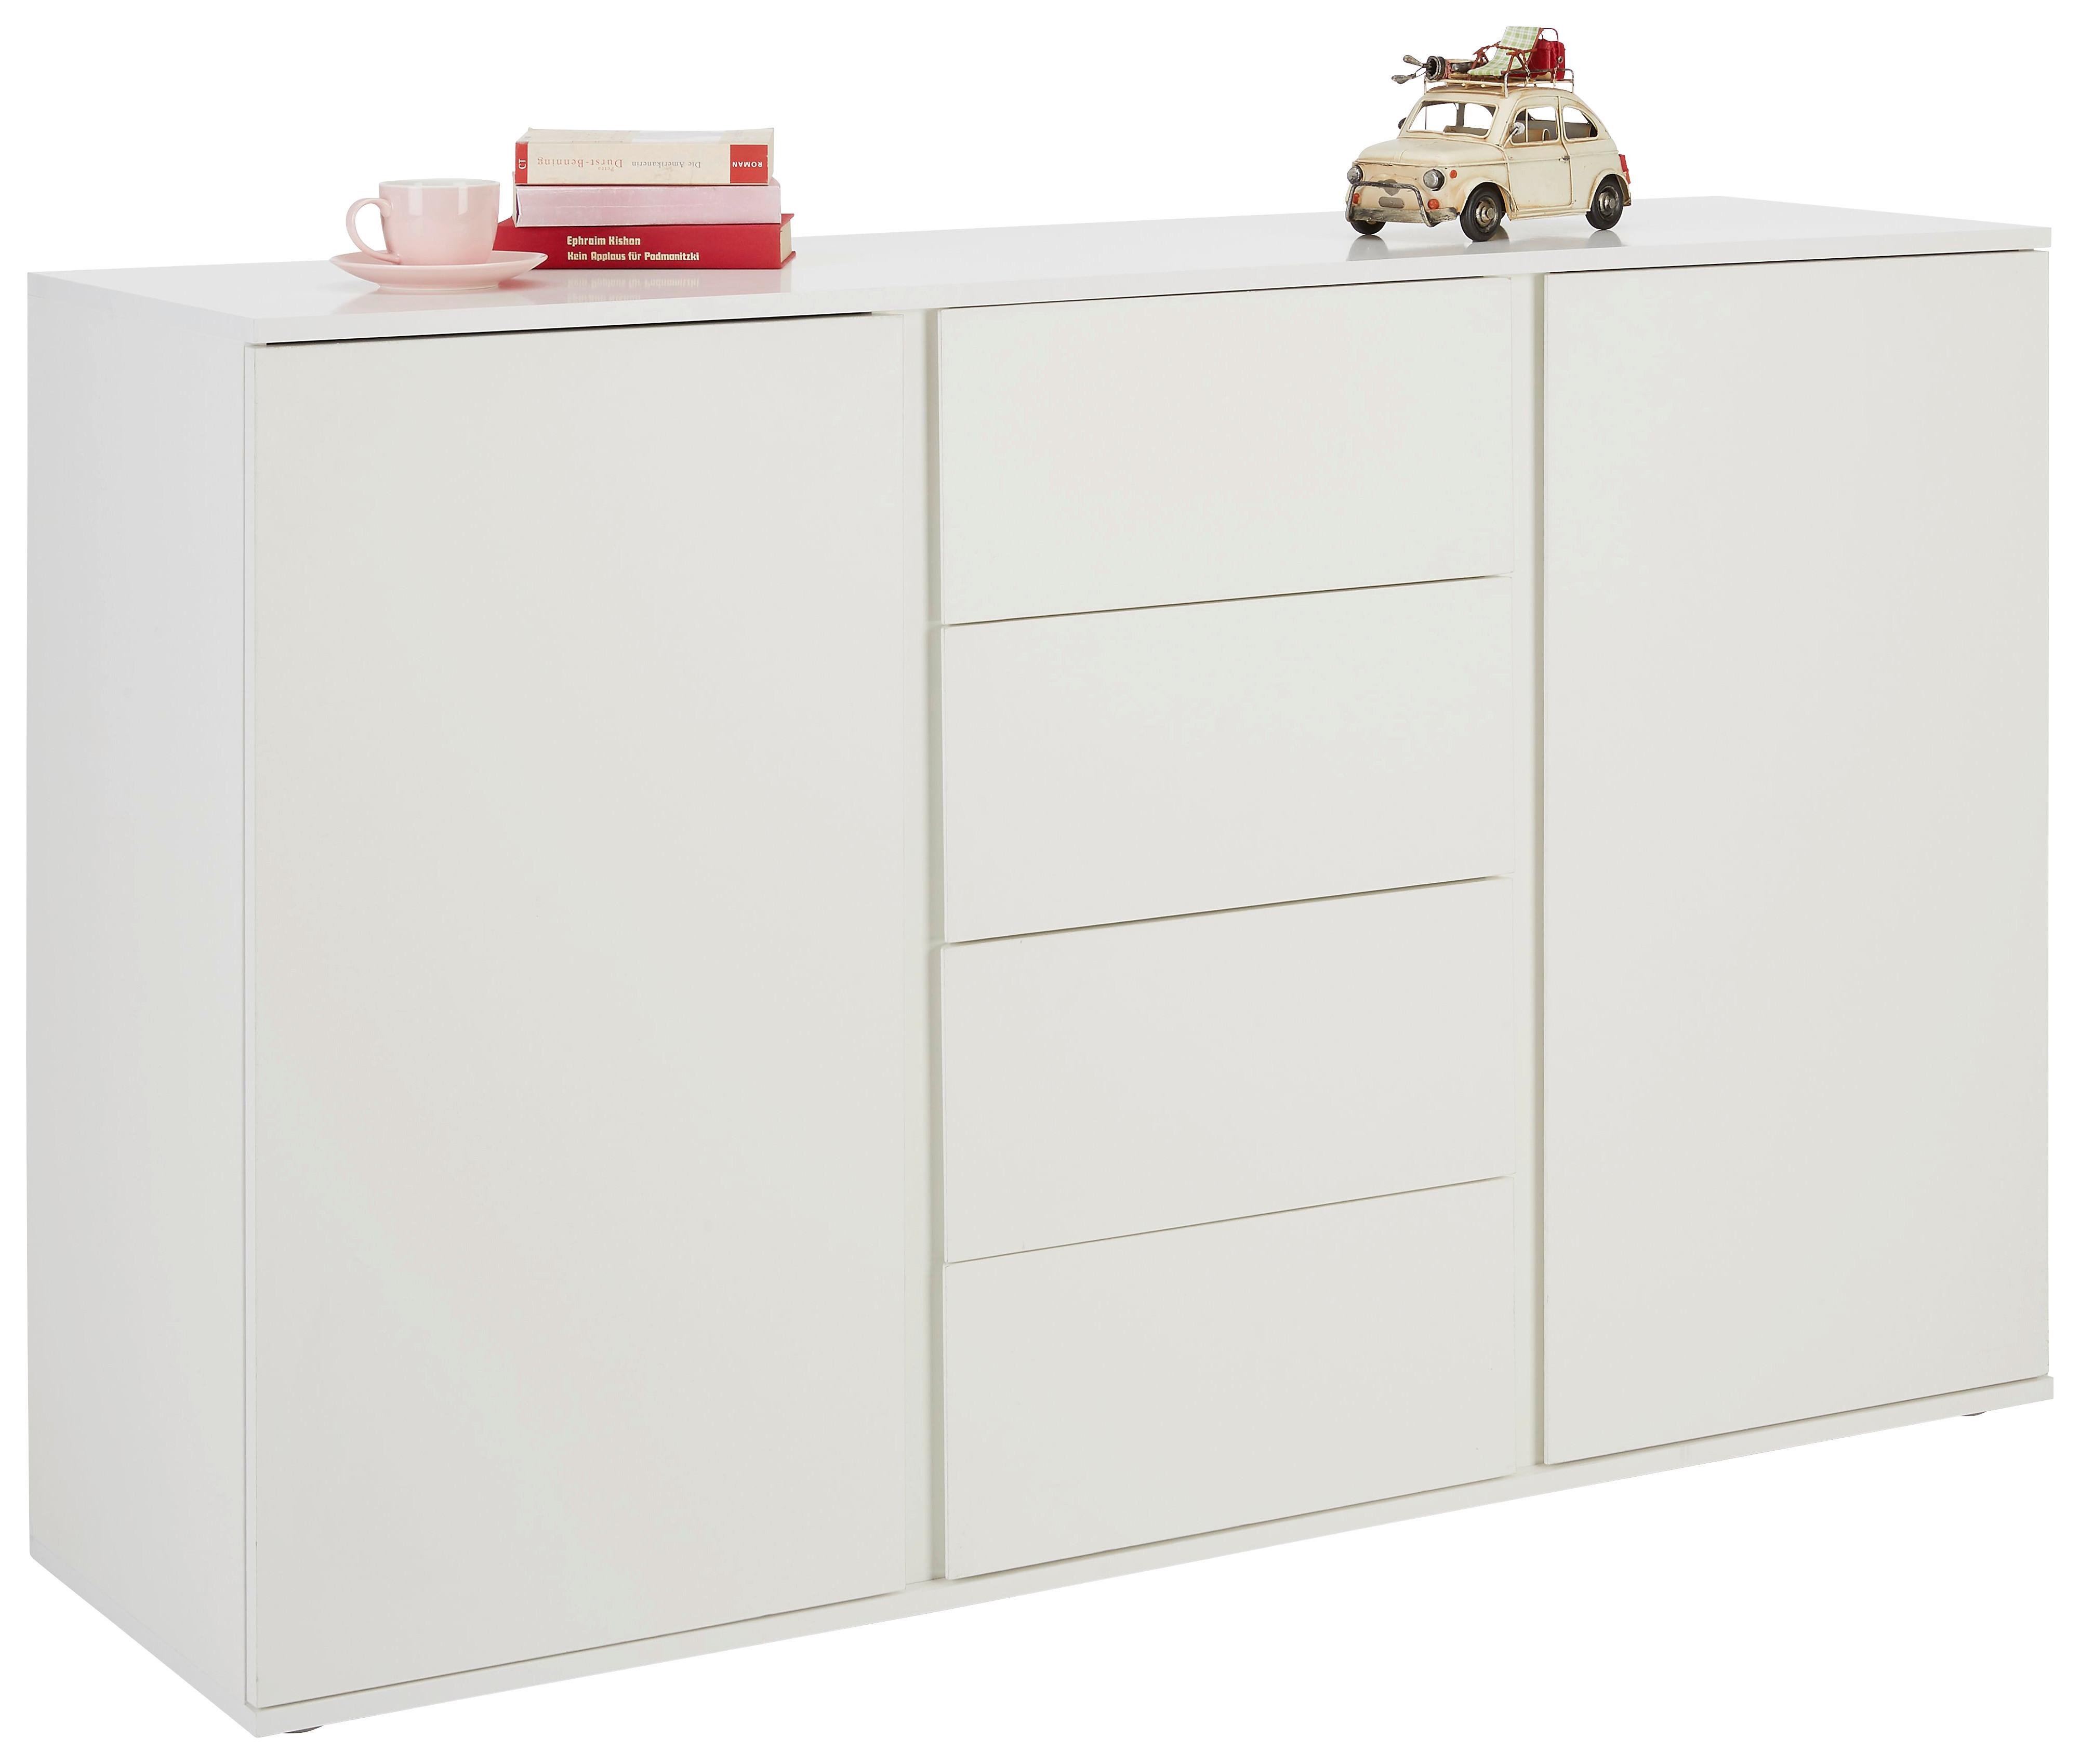 Sideboard in Weiss - Weiss/Grau, Modern, Holzwerkstoff/Kunststoff (150/95/43cm) - Modern Living